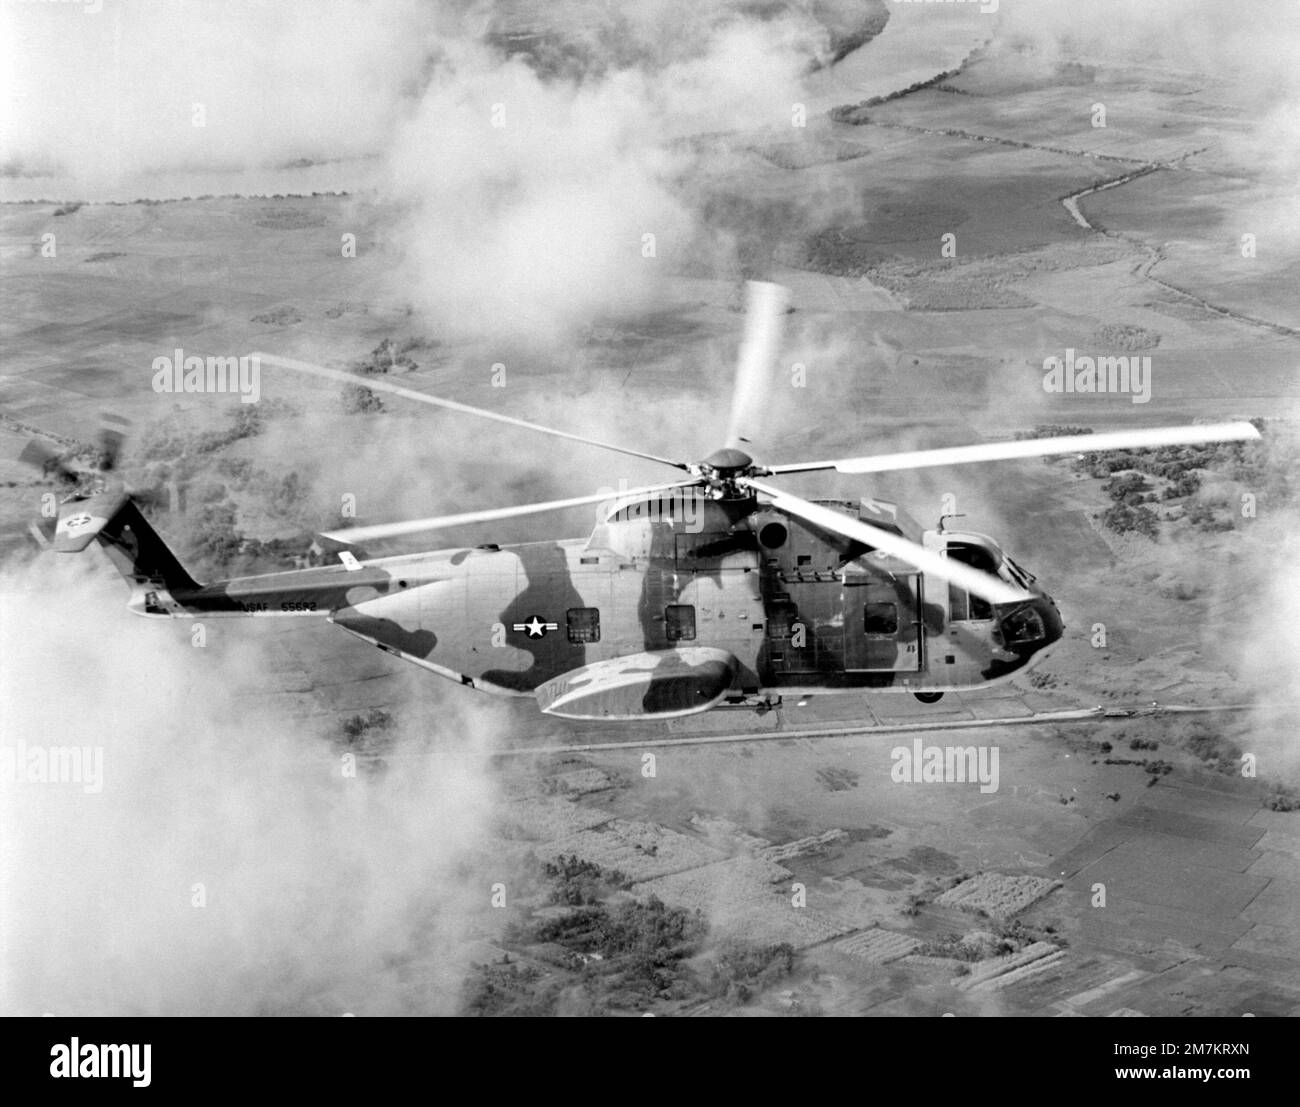 Les hélicoptères Jolly Green Giant de la Force aérienne HH-3E servent à secourir des pilotes en descente au Vietnam ou en mer de Chine méridionale. Piloté par le groupe de sauvetage et de récupération aérospatial 3rd, le bateau de sauvetage navigue à des vitesses allant jusqu'à 155 km/h et peut être ravitaillé en vol. Base: Saigon pays: Viet Nam (VNM) Banque D'Images